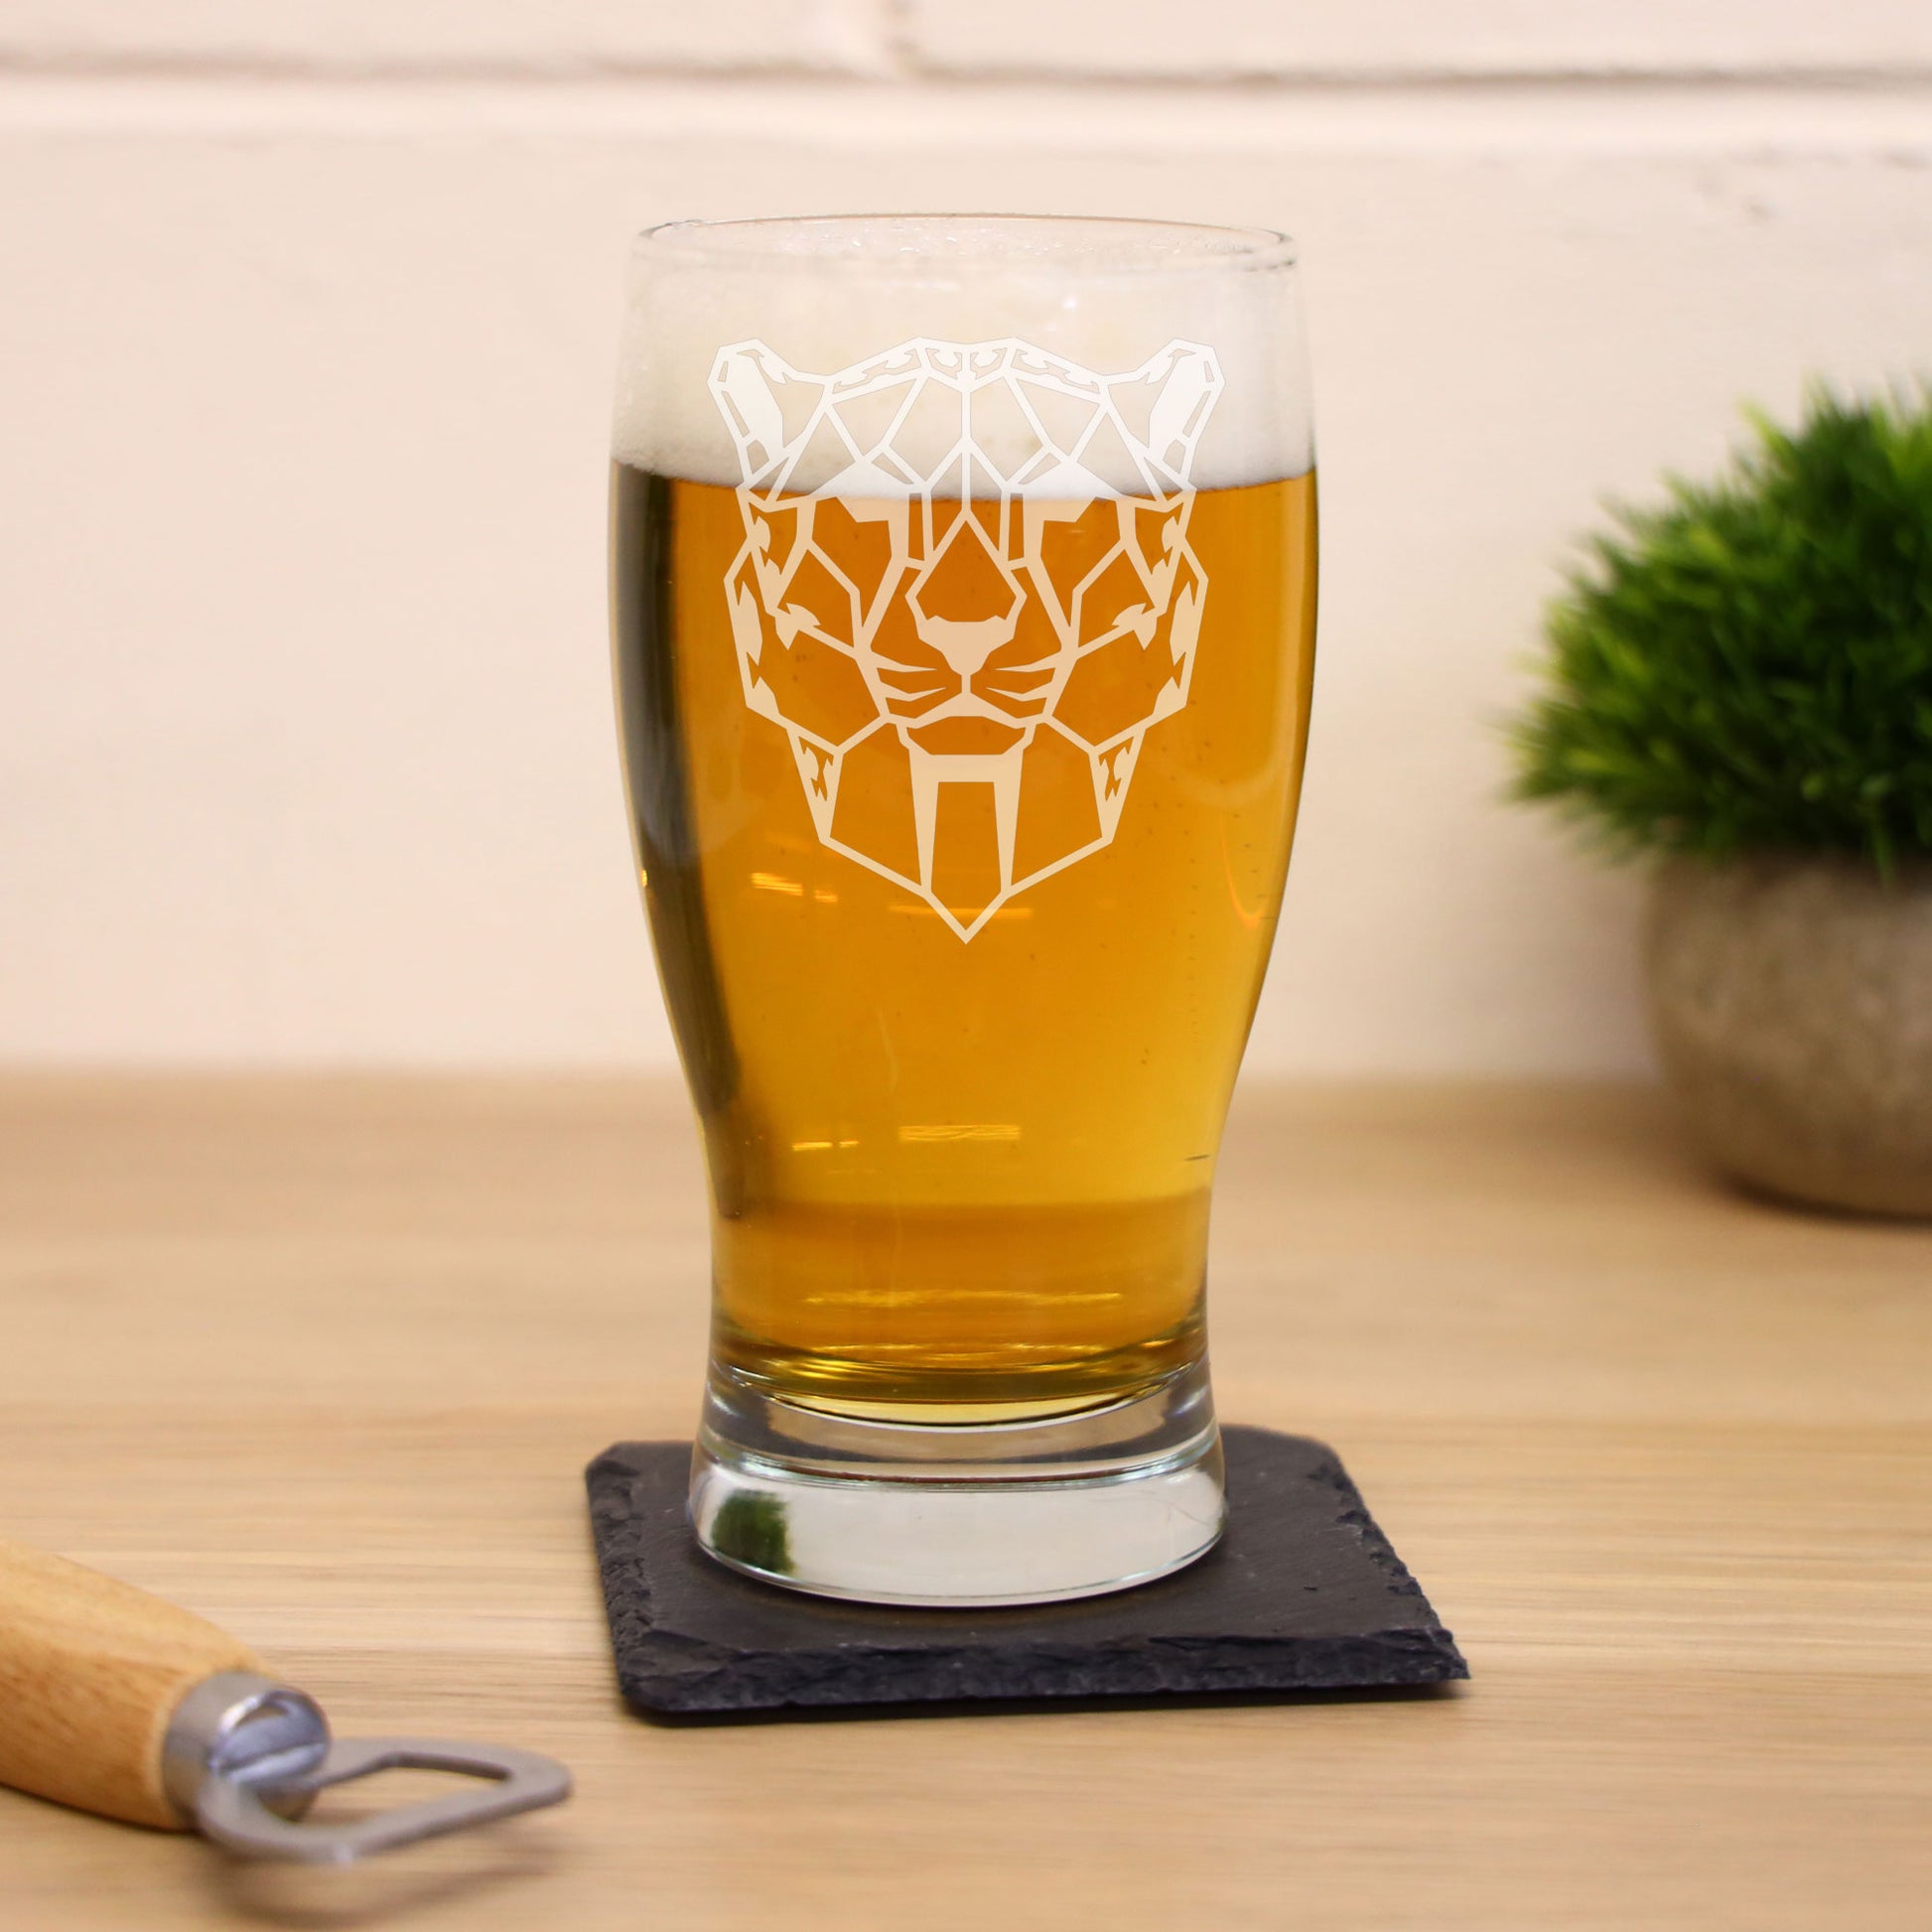 Cheetah Engraved Beer Pint Glass  - Always Looking Good -   